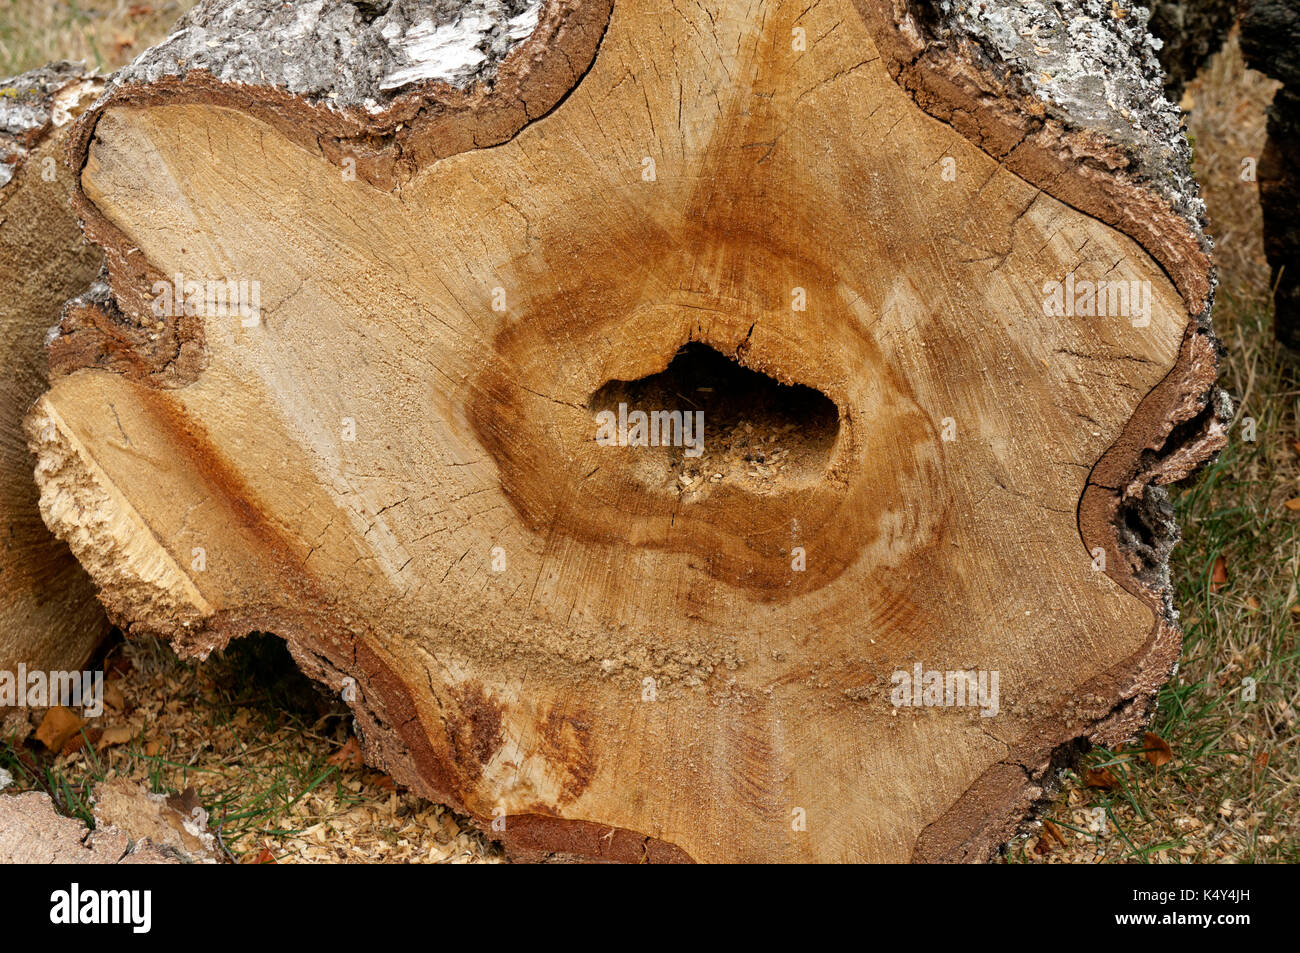 Section de tronc d'un bouleau blanc Betula pendula arbre montrant coeur- rot maladie fongique, Vancouver, BC, Canada Banque D'Images